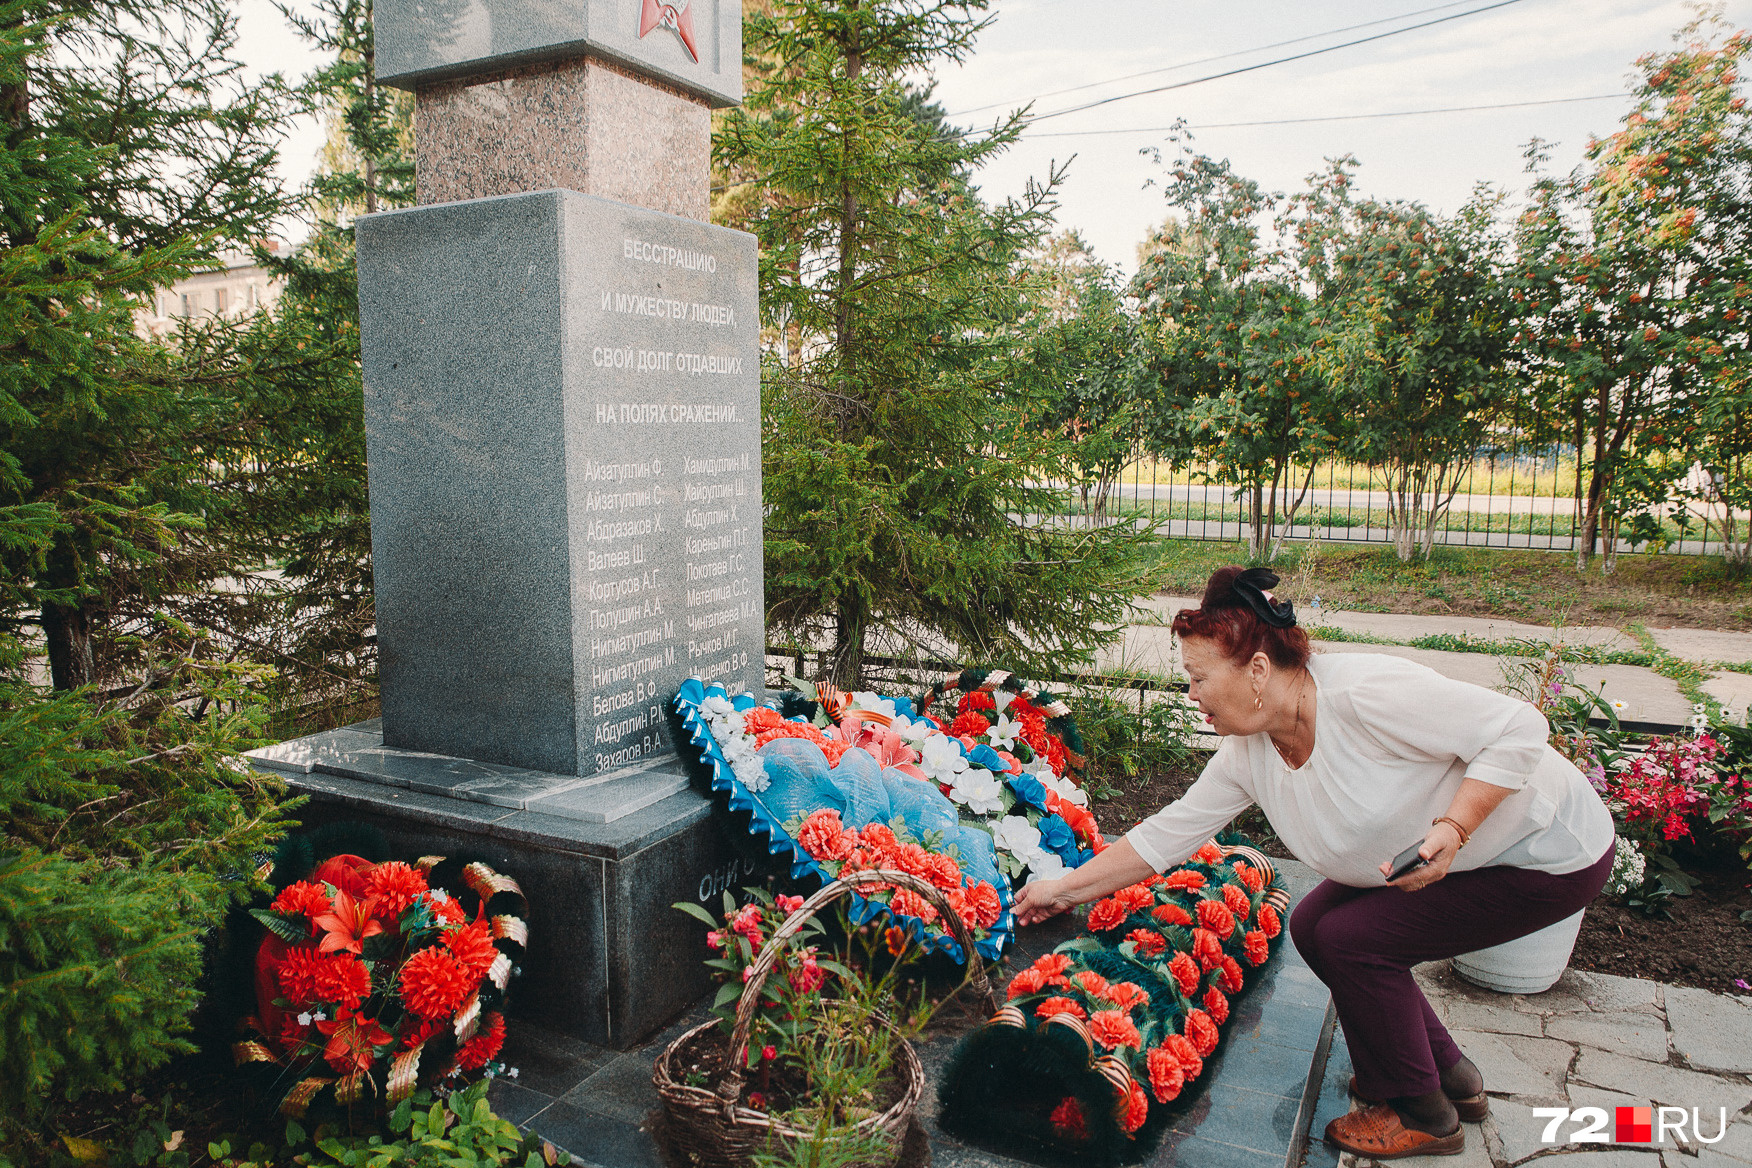 Мама Раушана Абдуллина принесла венок к мемориалу у школы. На нем можно увидеть две фамилии Абдуллиных: дедушки, воевавшего в Великую Отечественную войну, и внука, павшего в сражении в Южной Осетии